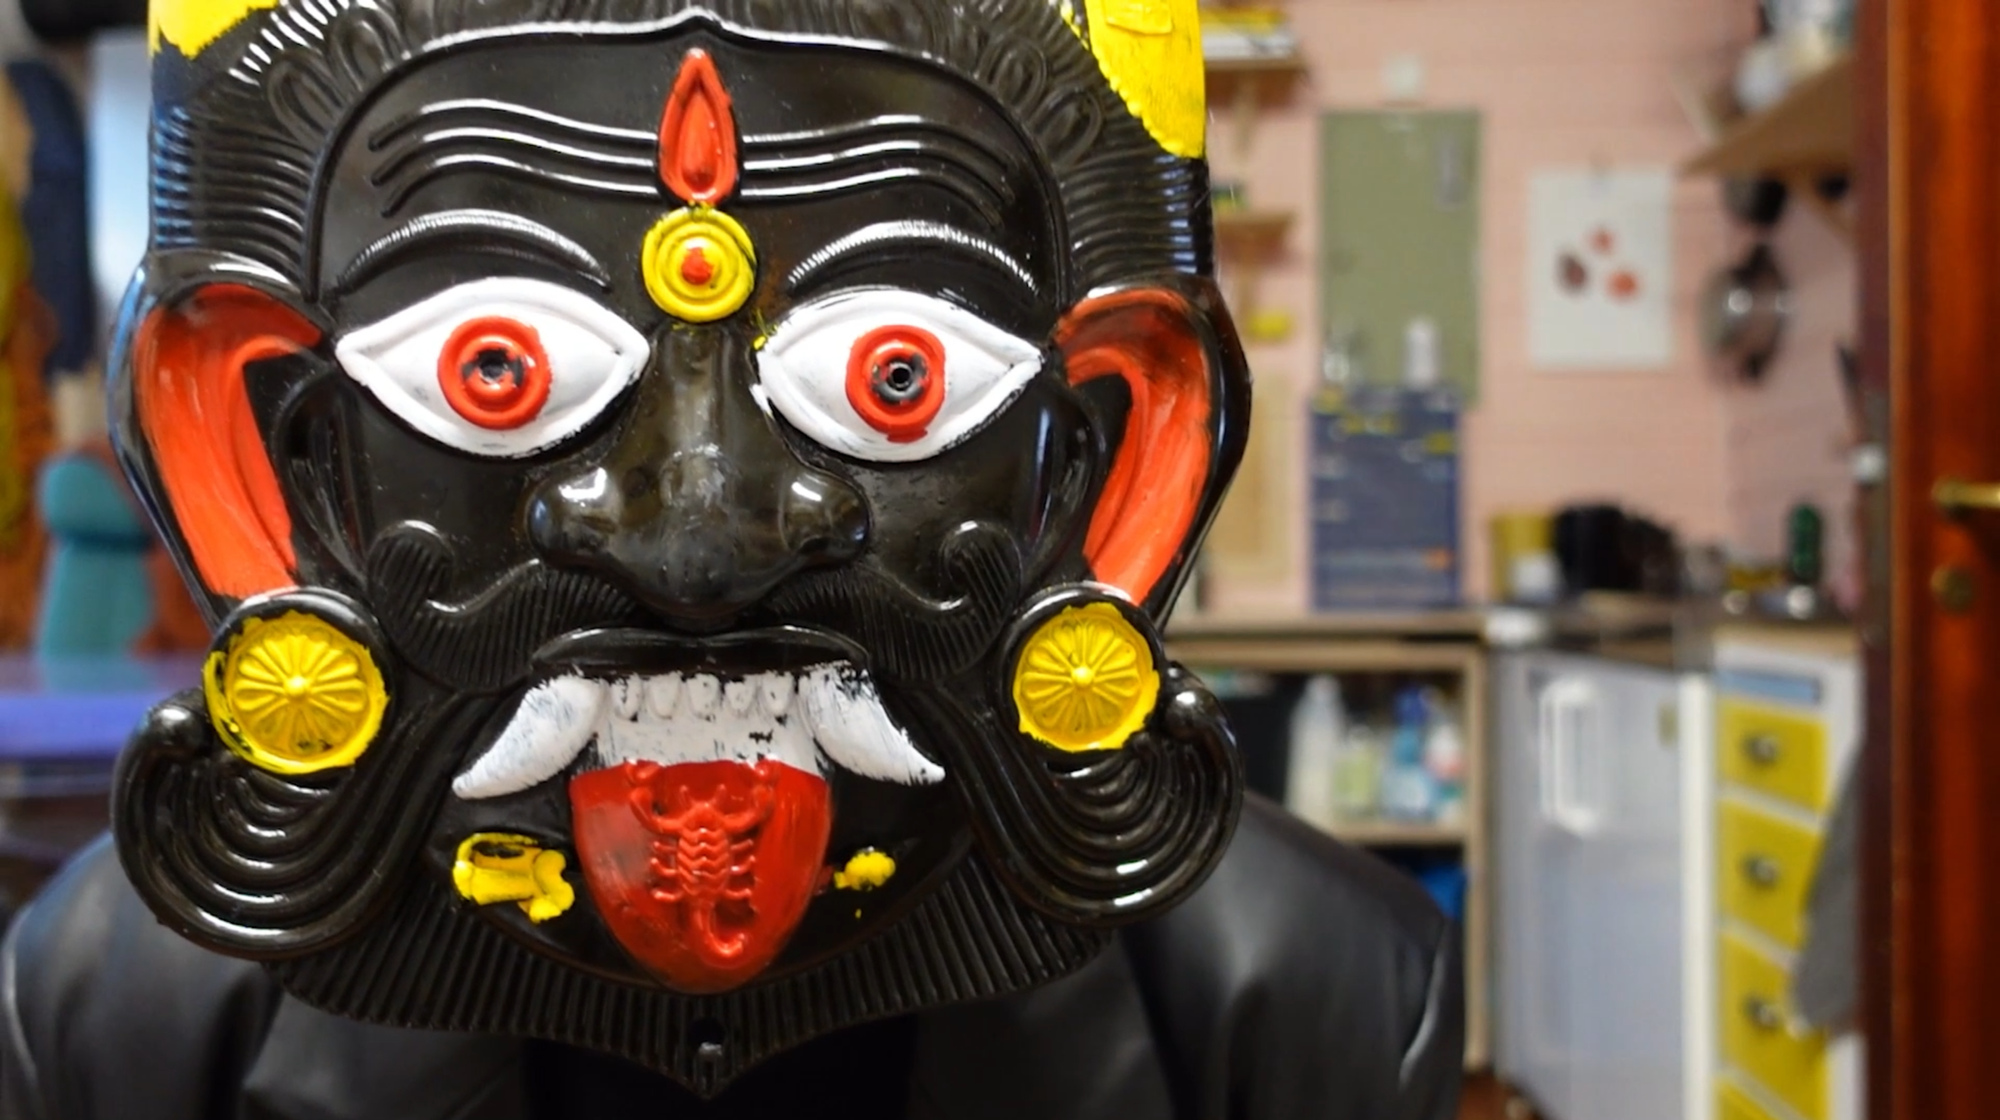 Fargefoto av en svart maske med gule, røde og hvite detaljer.